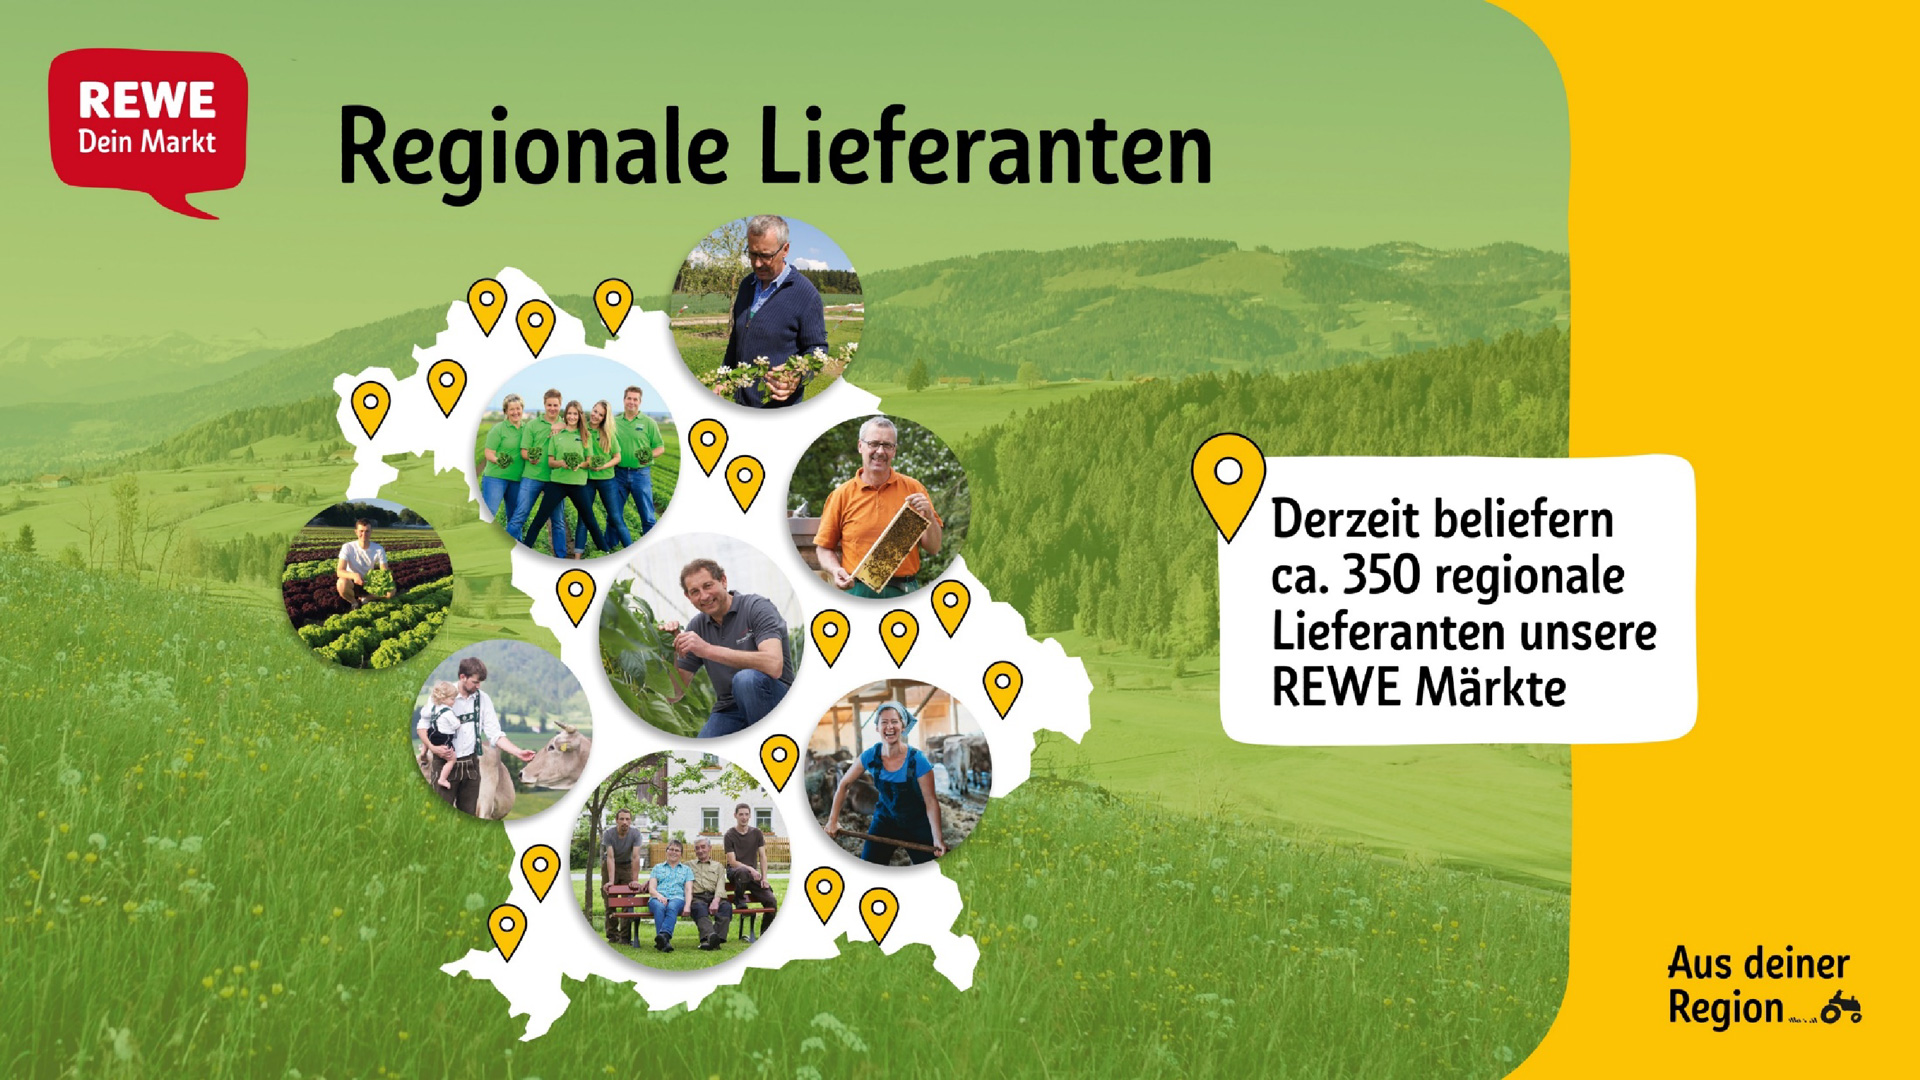 Karte von Bayern mit Bildern der verschiedenen Landwirte und Standortpunkten, die zeigen, wo überall Lokalpartnerschaften angesiedelt sind.